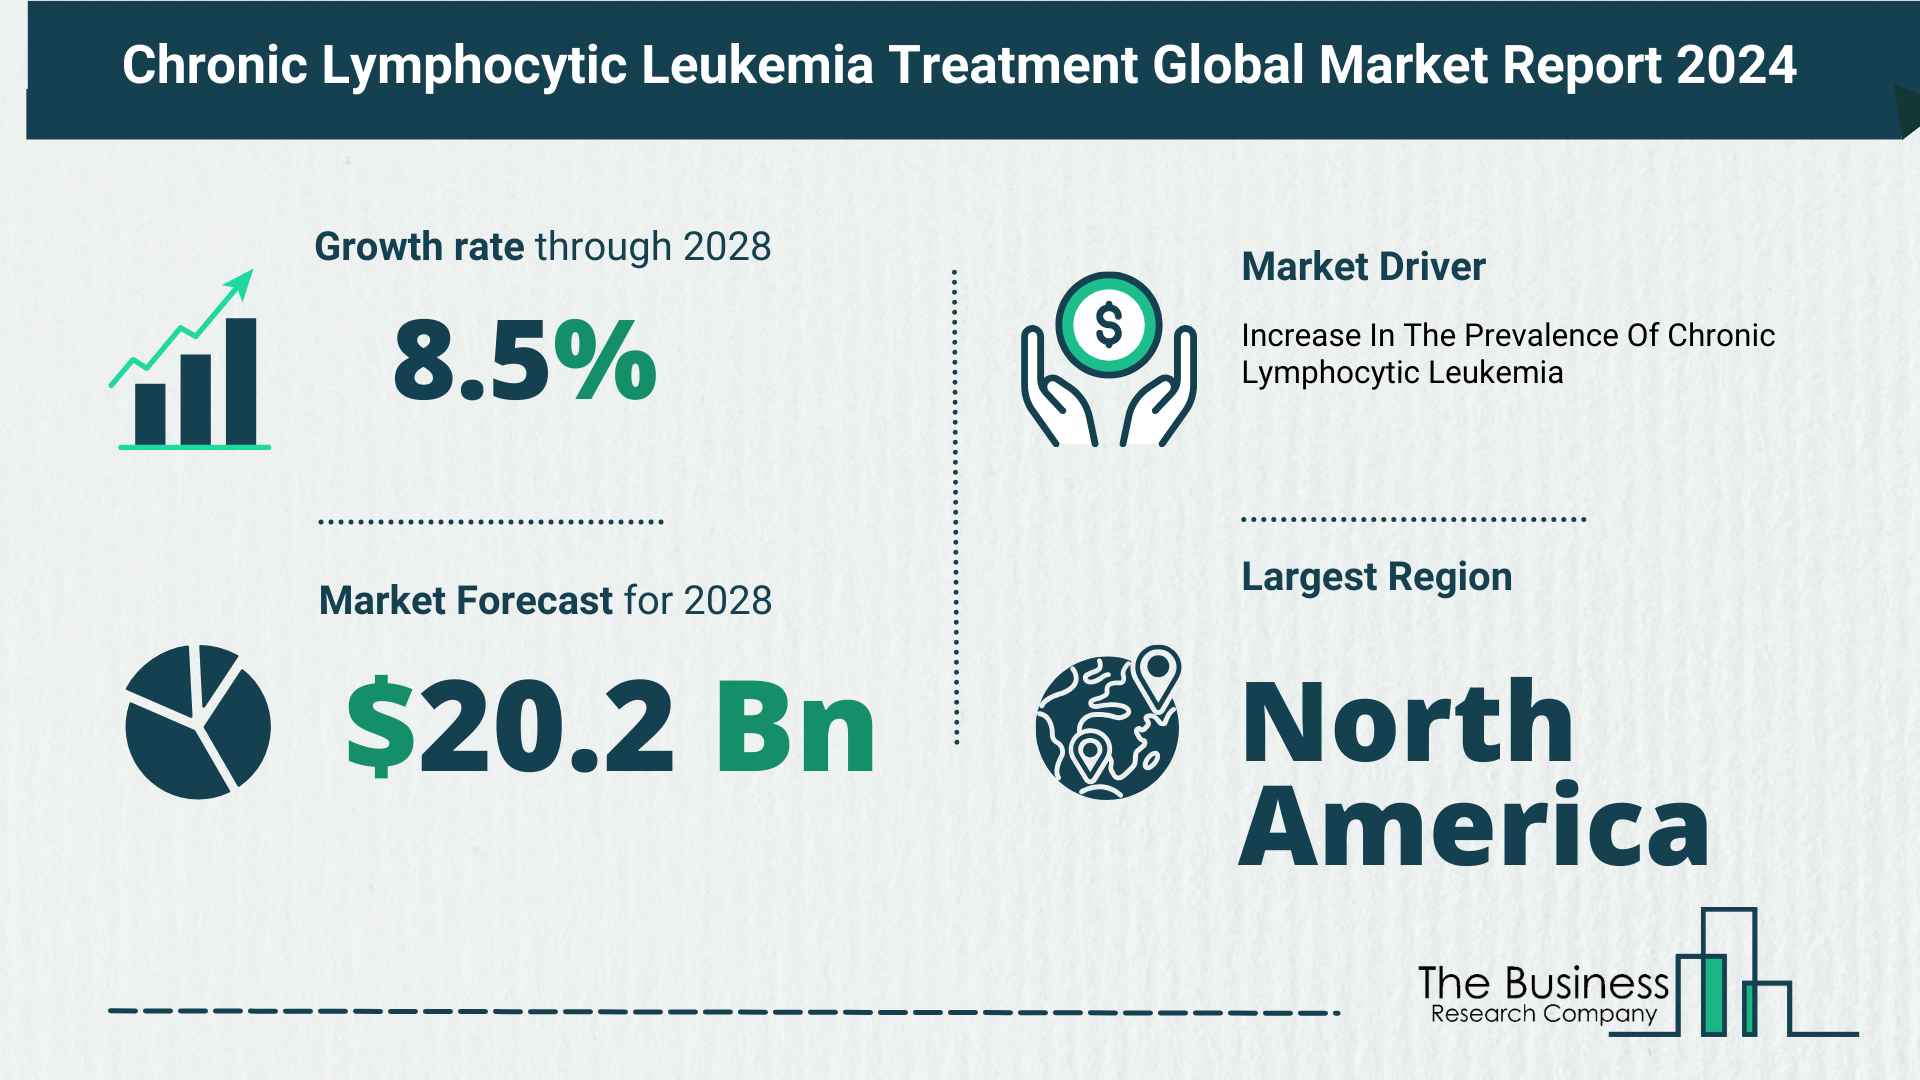 Chronic Lymphocytic Leukemia Treatment Market Forecast 2024: Forecast Market Size, Drivers And Key Segments